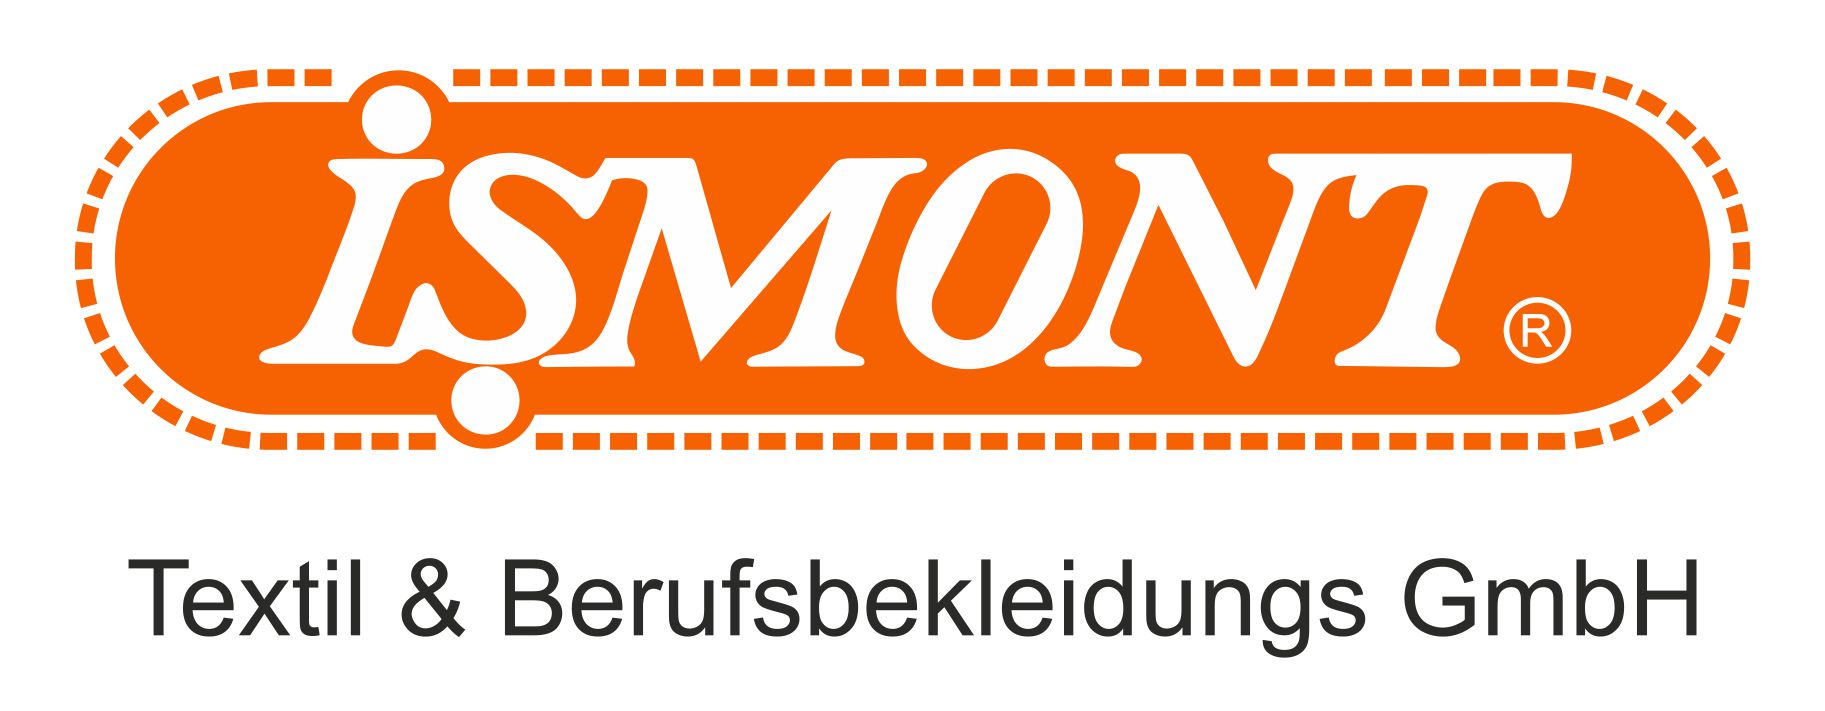 ISMONT Textil & Berufsbekleidungsgesellschaft. mbH Logo